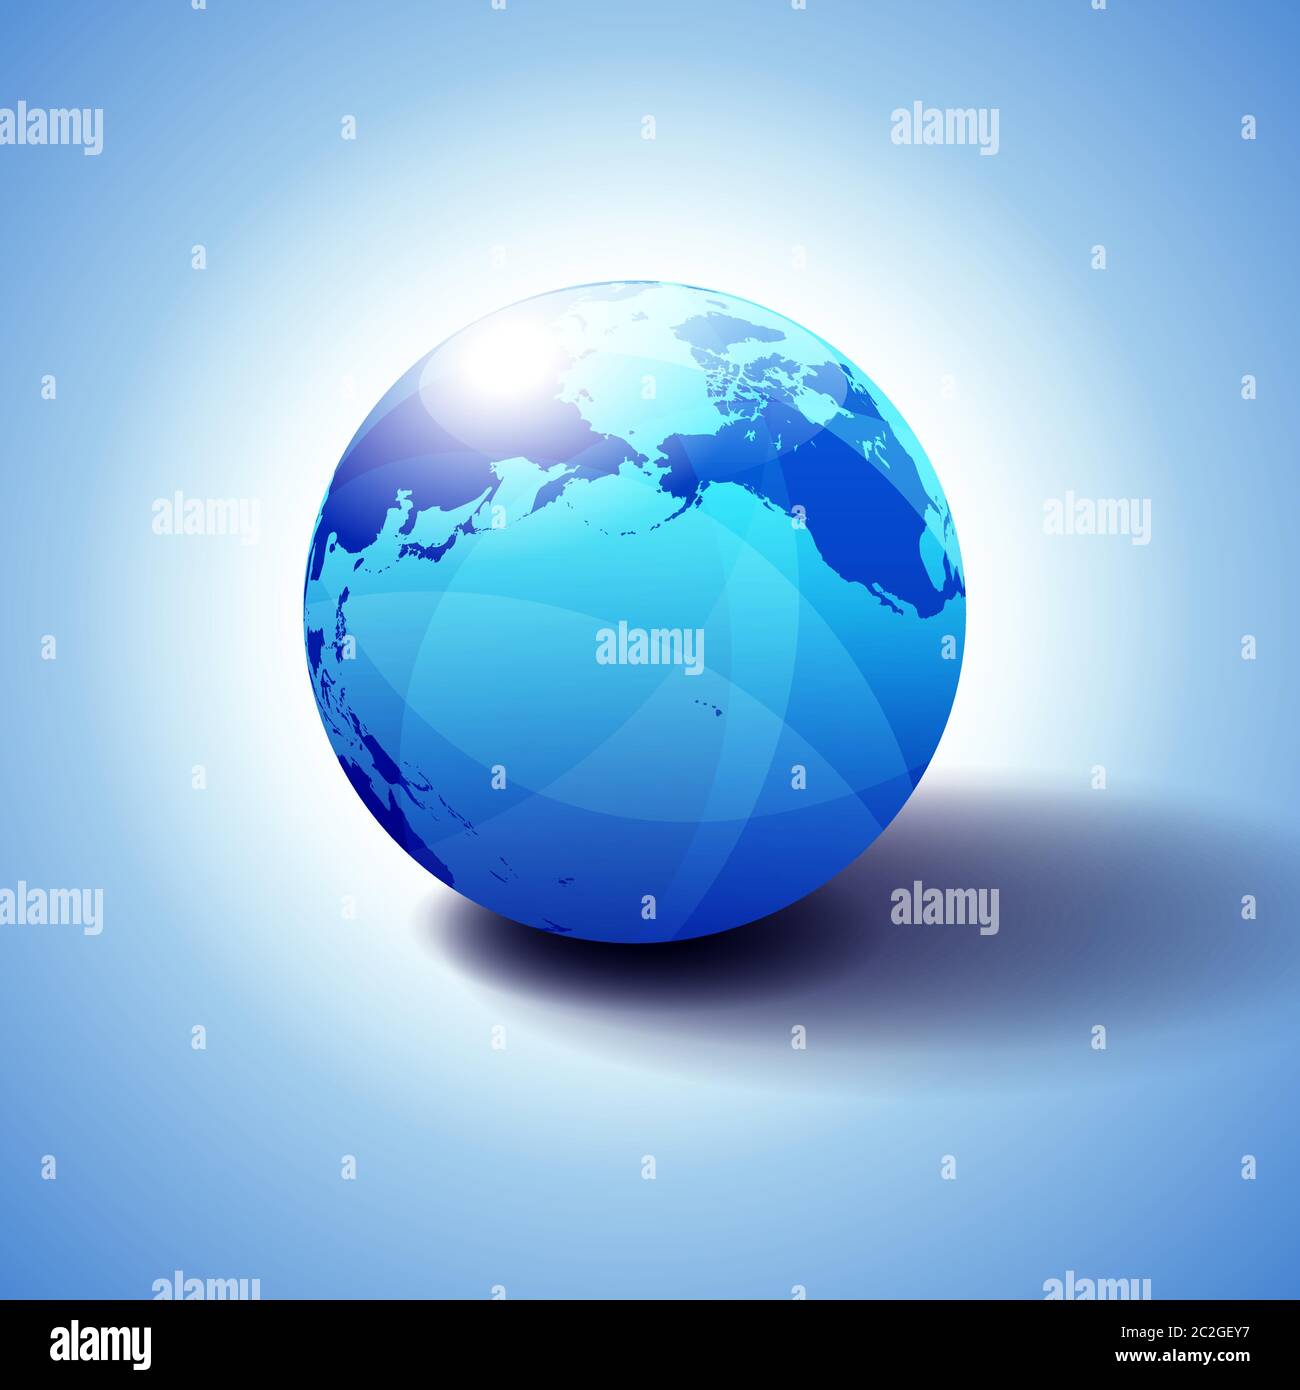 Pacific Rim Nord America, Canada, Siberia Russia e Hawaii sfondo con icona Globe illustrazione 3D, lucida, sfera lucida con mappa globale Illustrazione Vettoriale